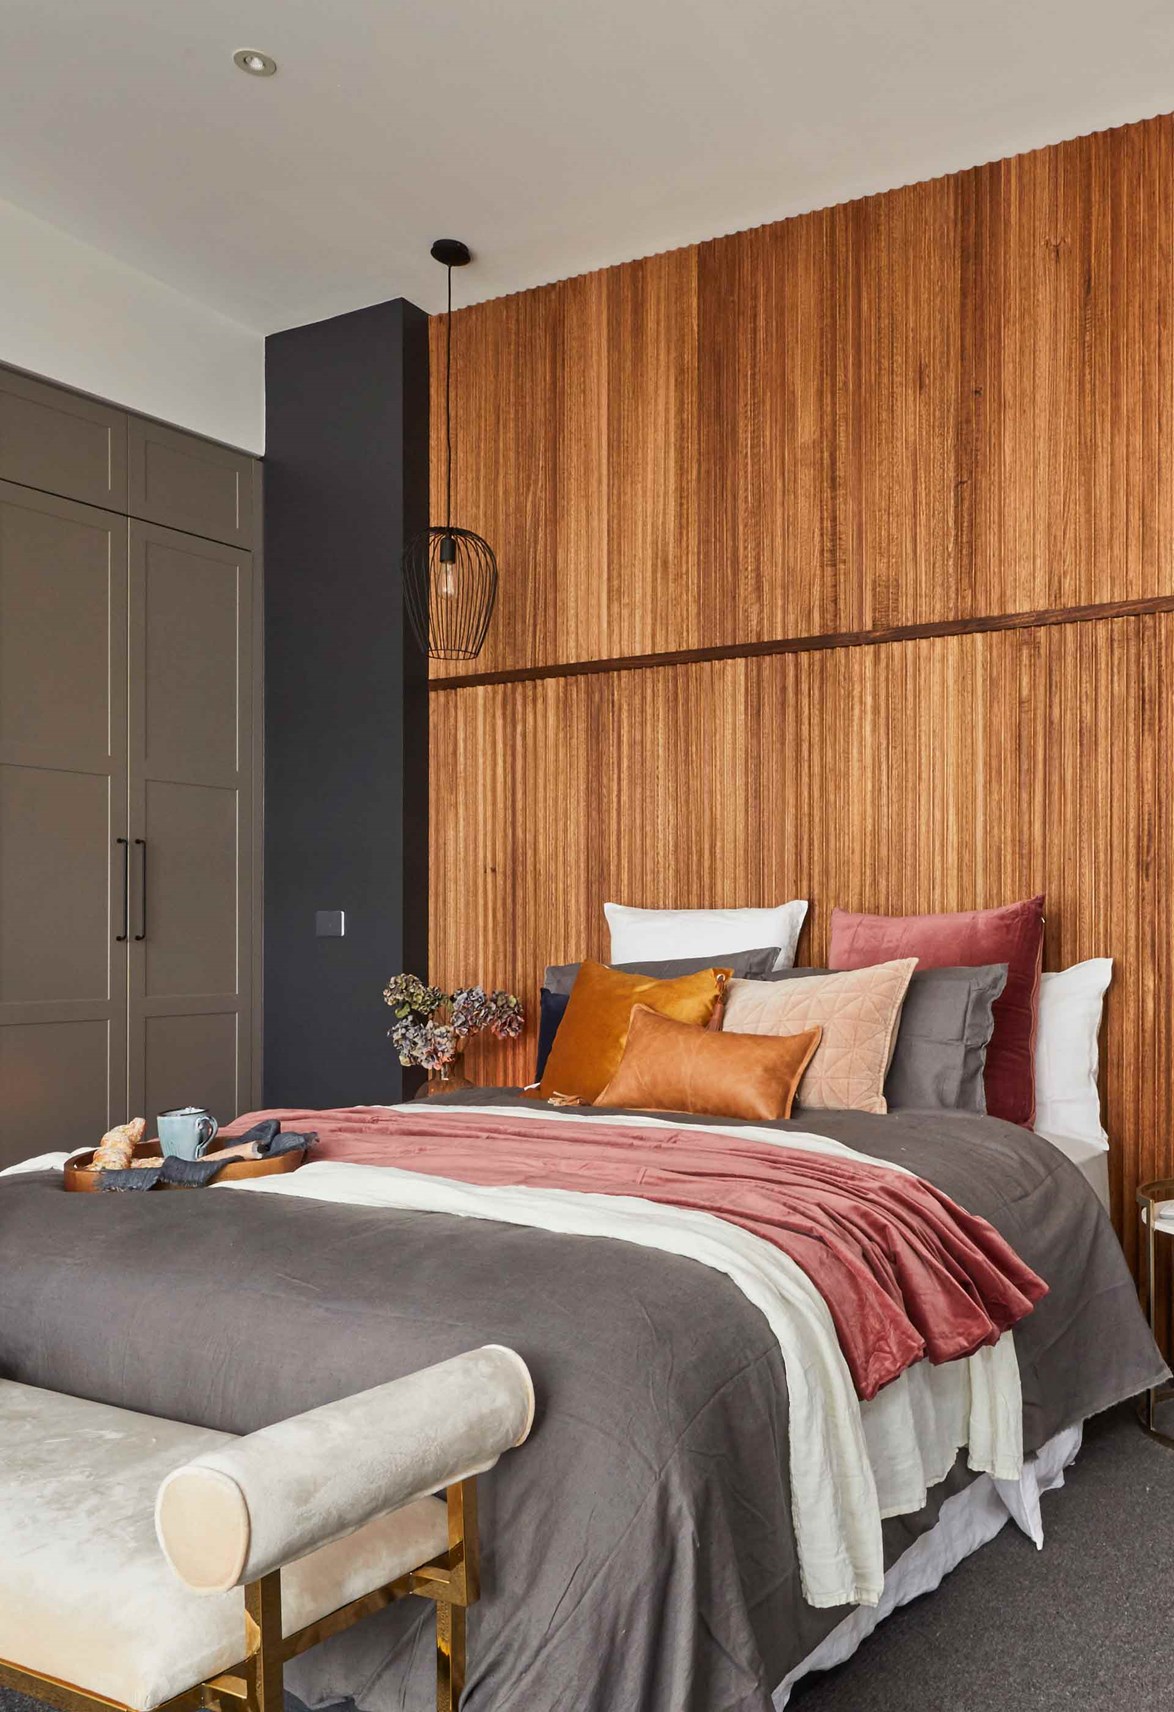 12 ý tưởng thiết kế giúp bạn có được căn phòng ngủ đẹp ngang tầm làm từ chuyên gia - Ảnh 6.